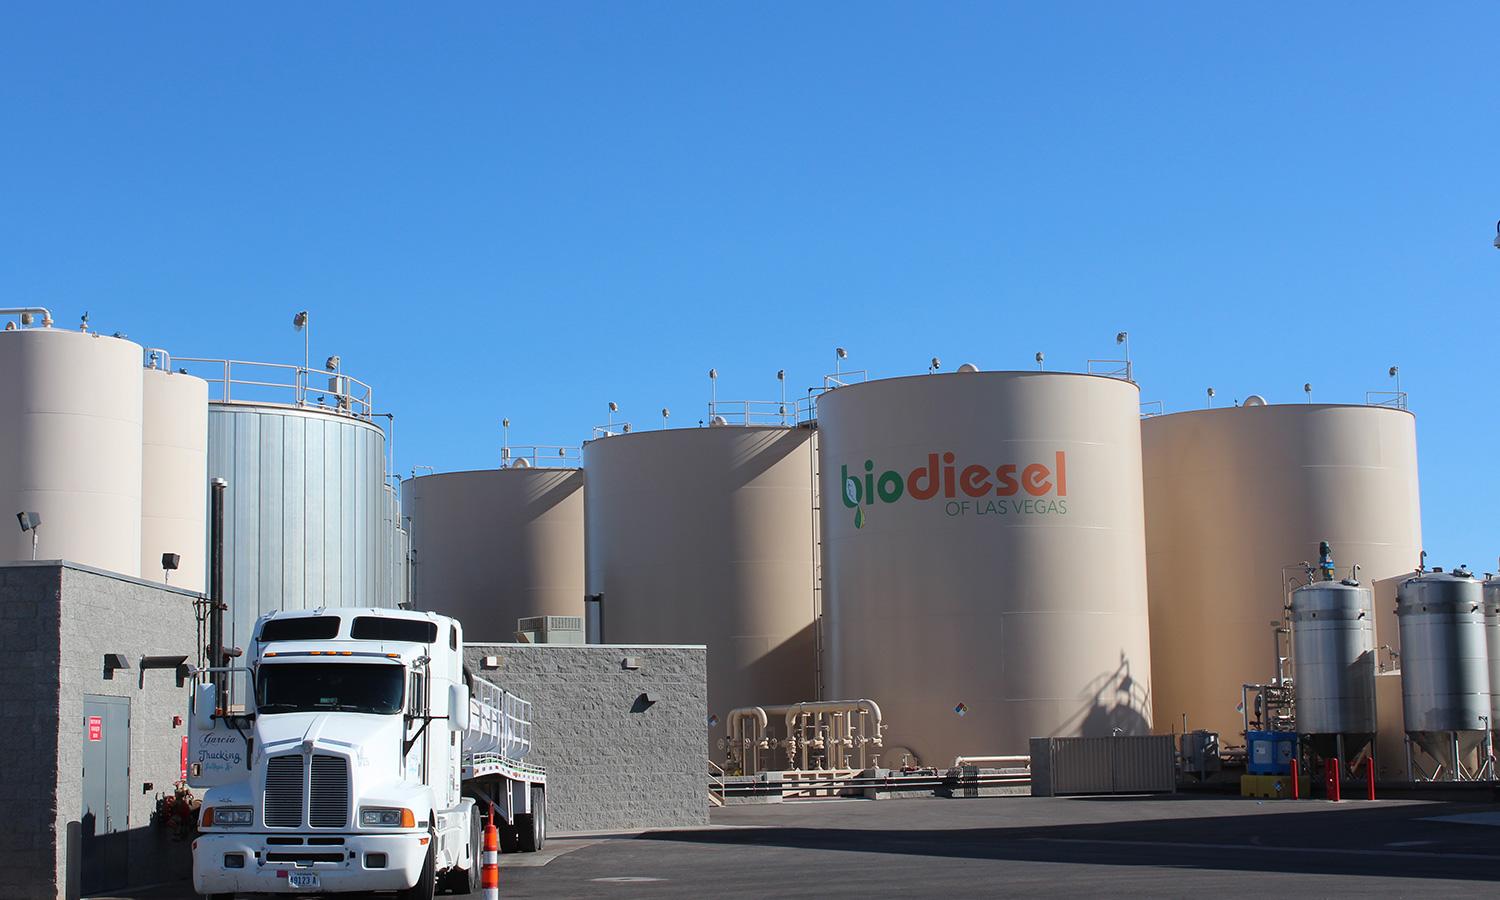 Biodiesel tanks at a biodiesel plant